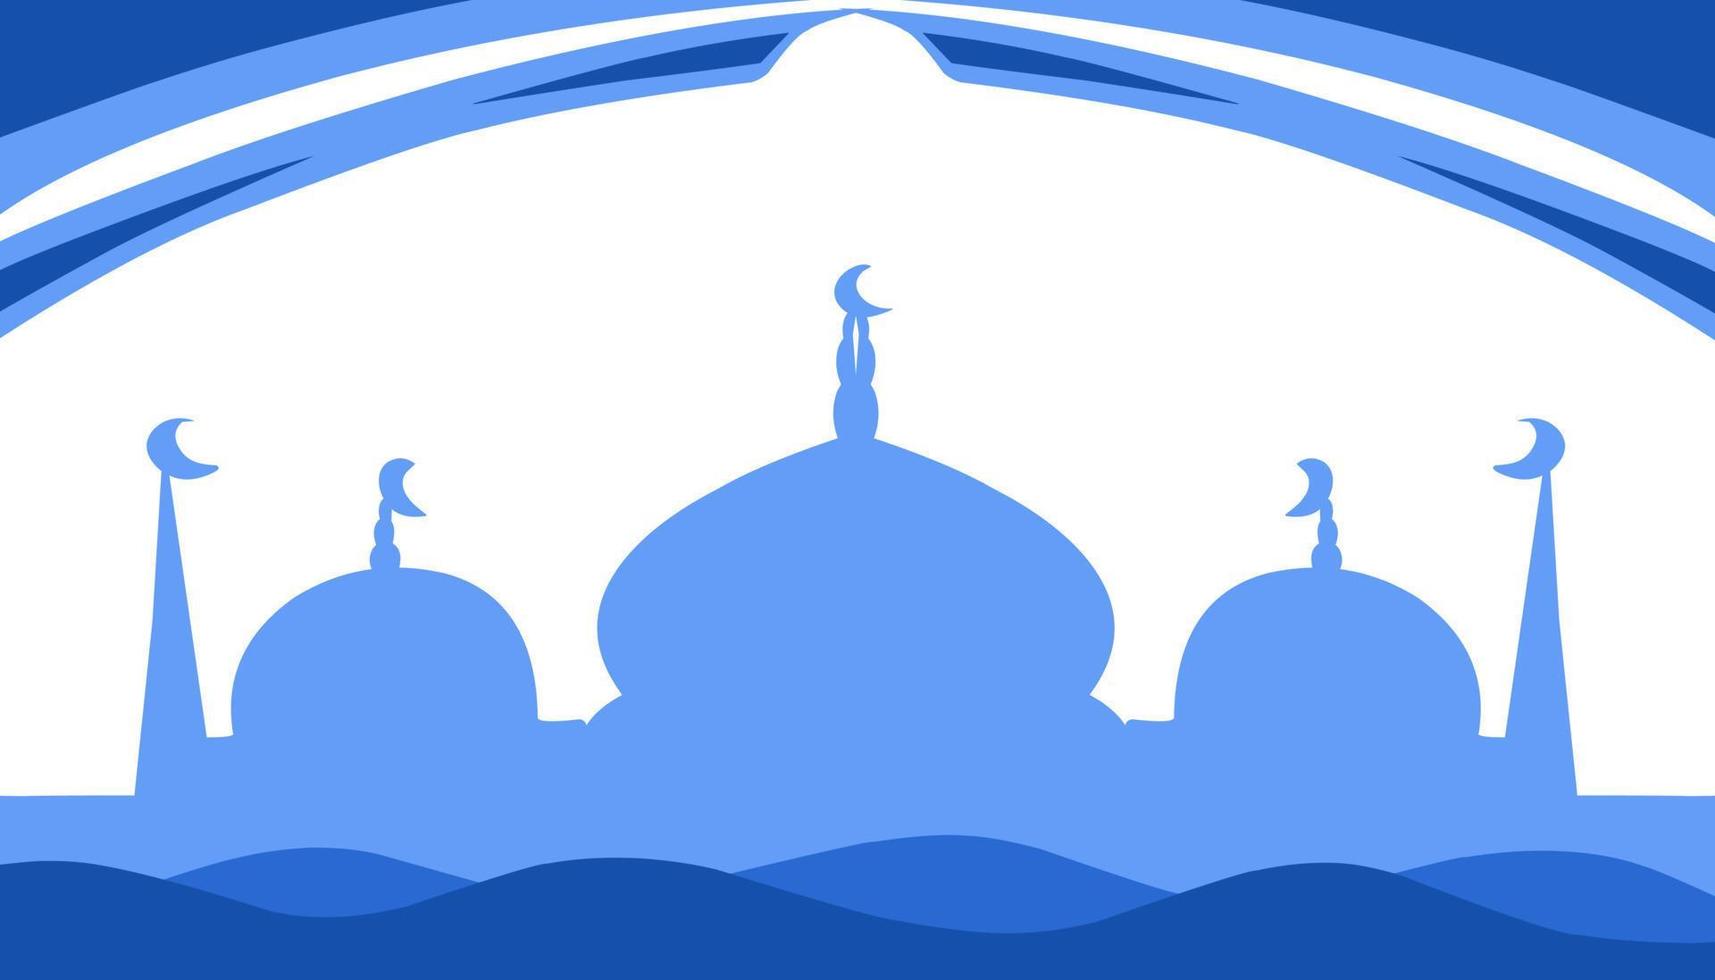 fundo ilustração do a tema do Ramadã e eid al-fitr e eid al-adha, com a imagem do uma azul mesquita vetor